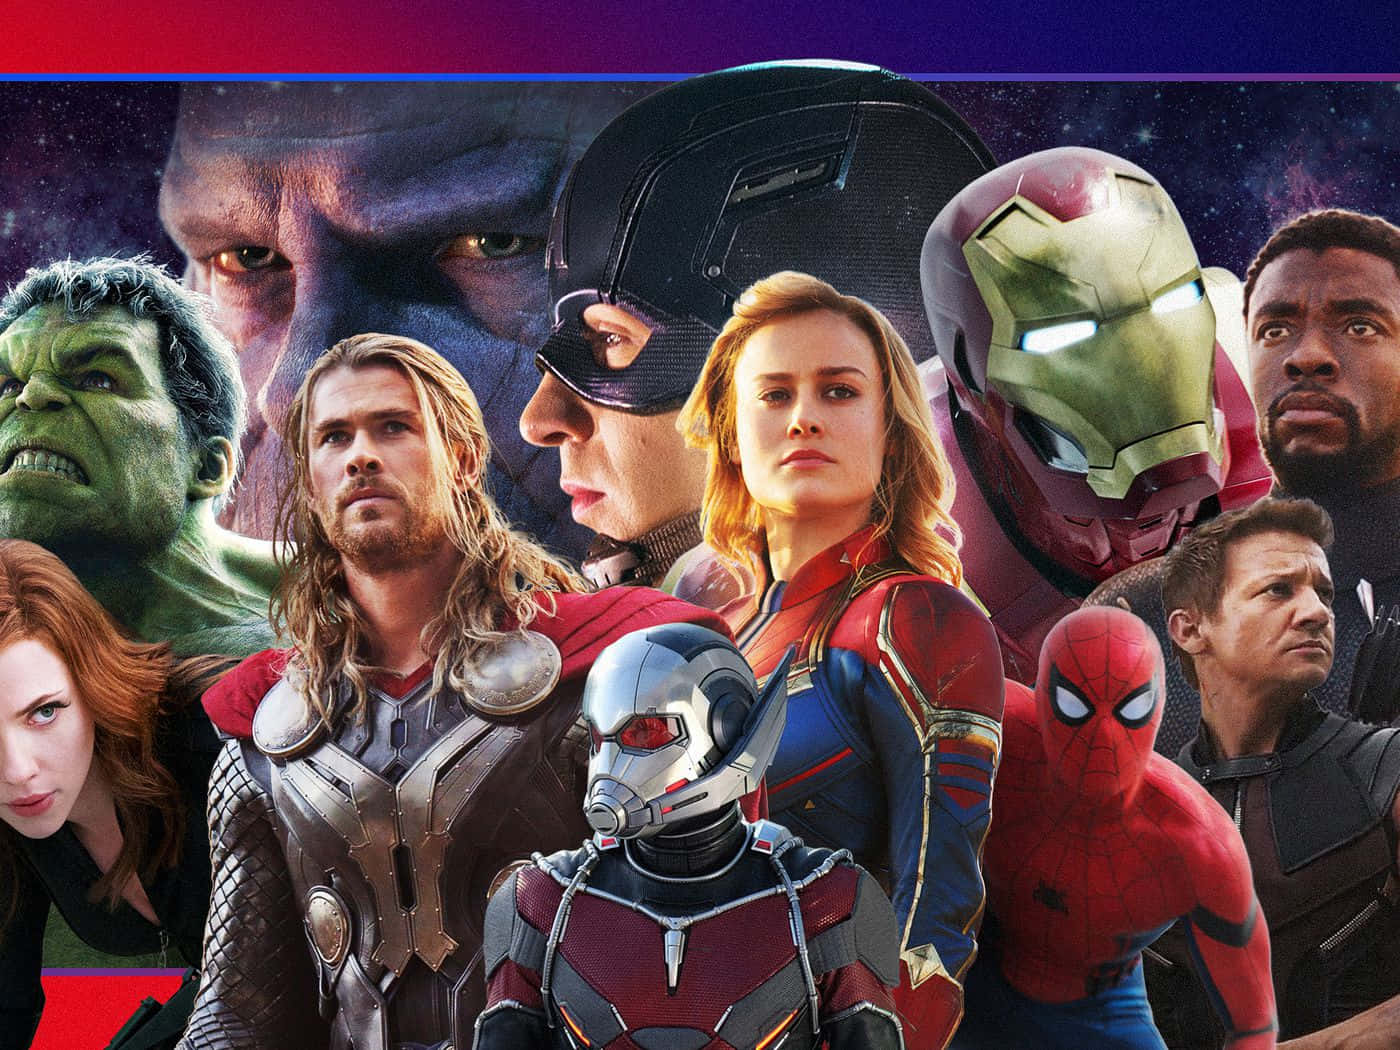 Avengersvereinigen! Sammelt Die Superhelden Des Marvel Cinematic Universe, Um Die Welt Zu Retten!